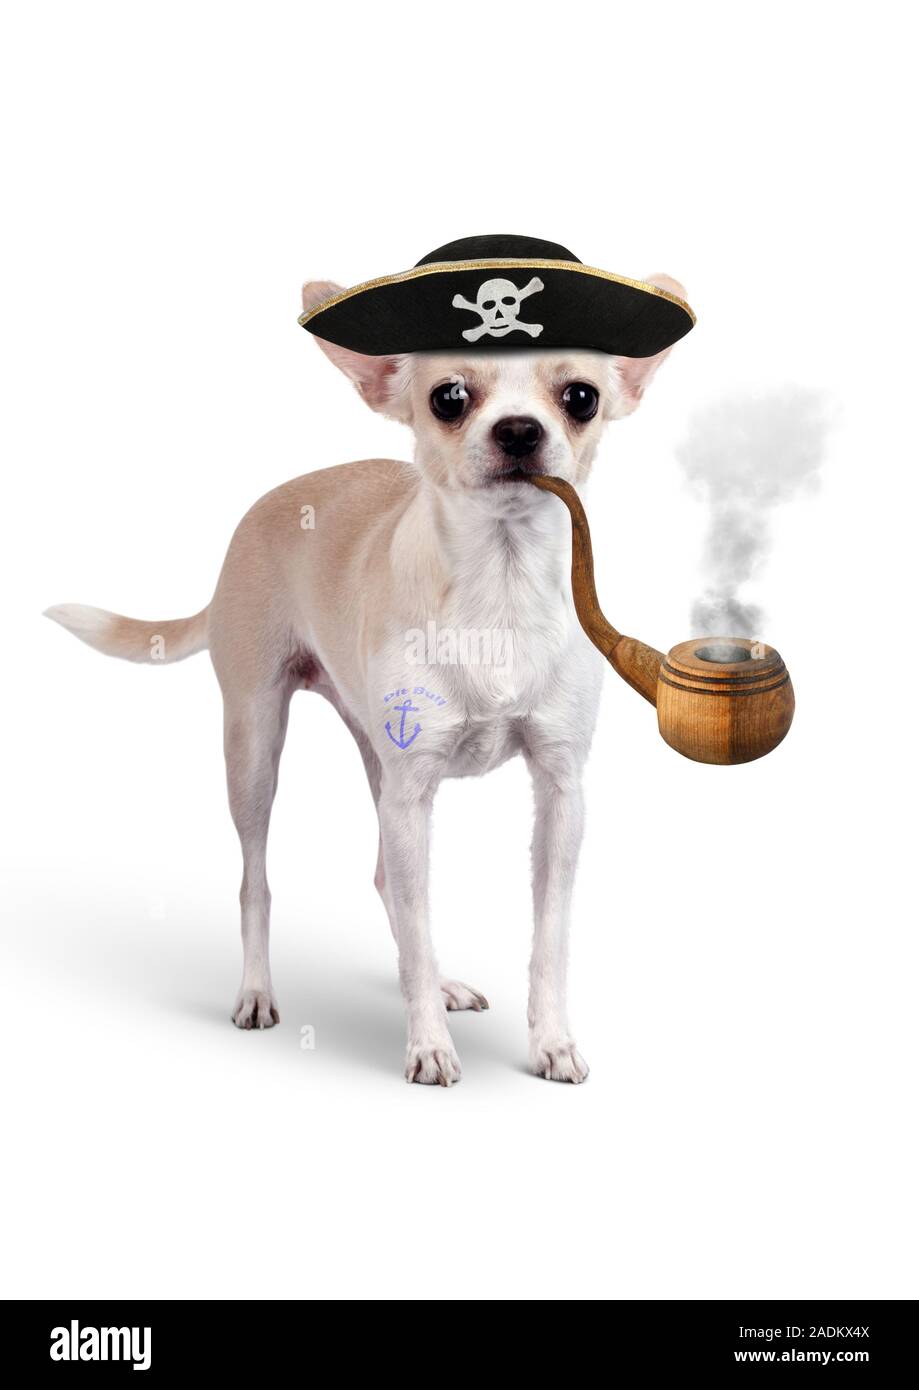 Animales divertido pirata, perro con sombrero y tubo de tabaco Foto de stock